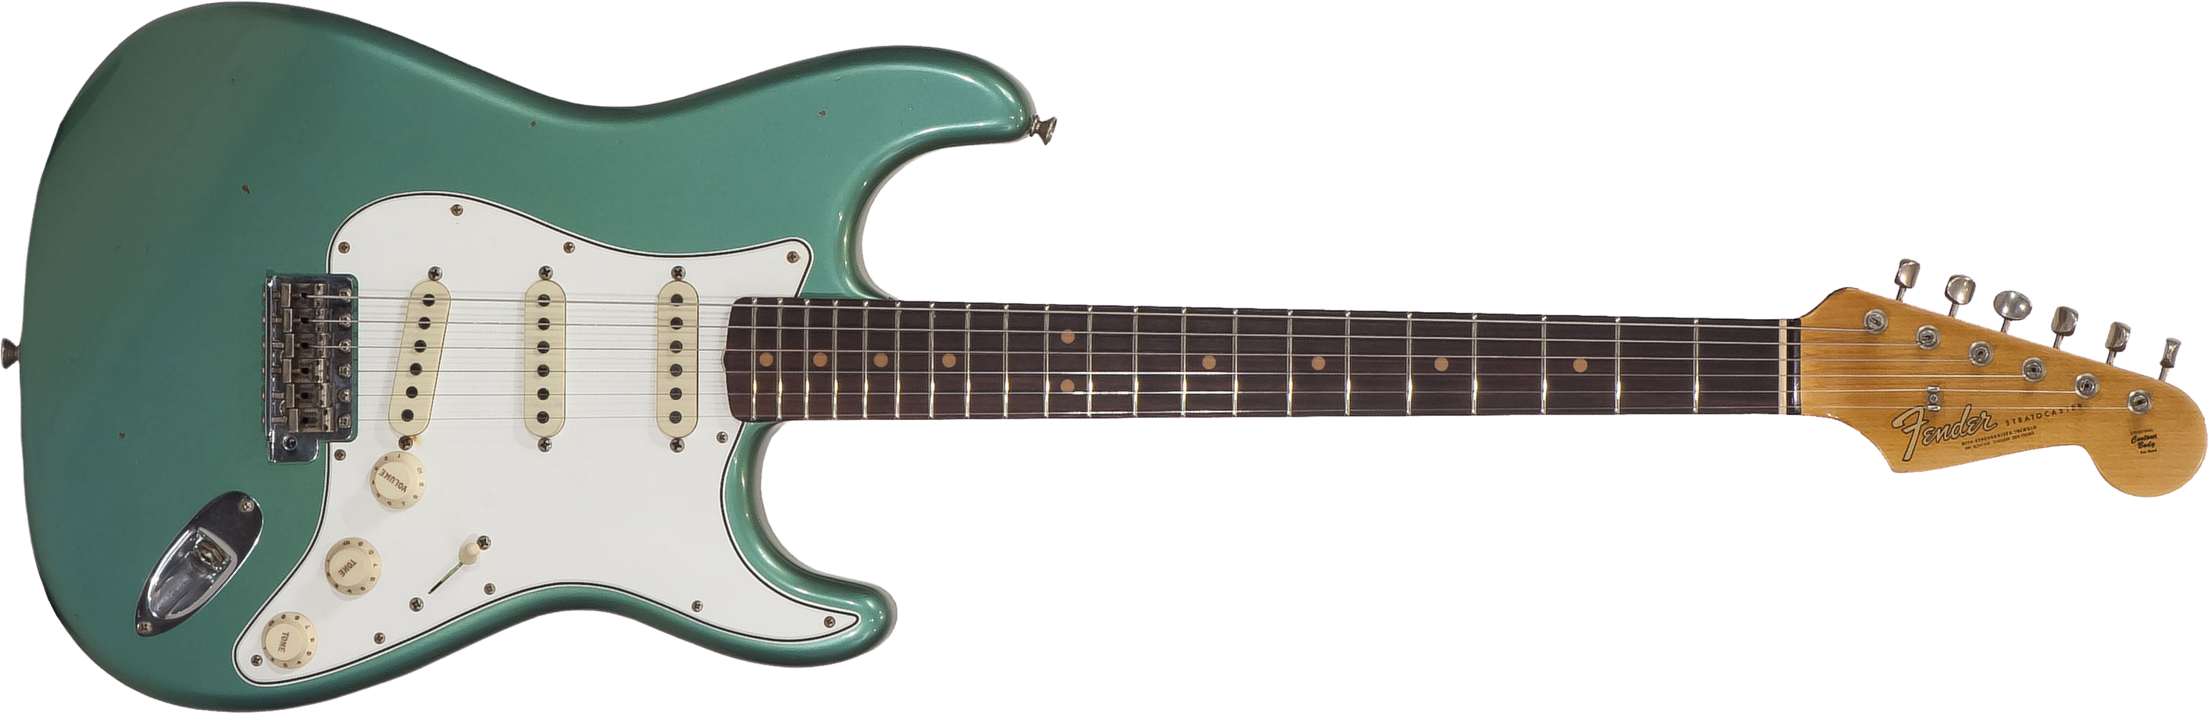 Fender Custom Shop Strat 64 Ltd 2018 Rw - Journeyman Relic Sage Green Metallic - Guitare Électrique Forme Str - Main picture